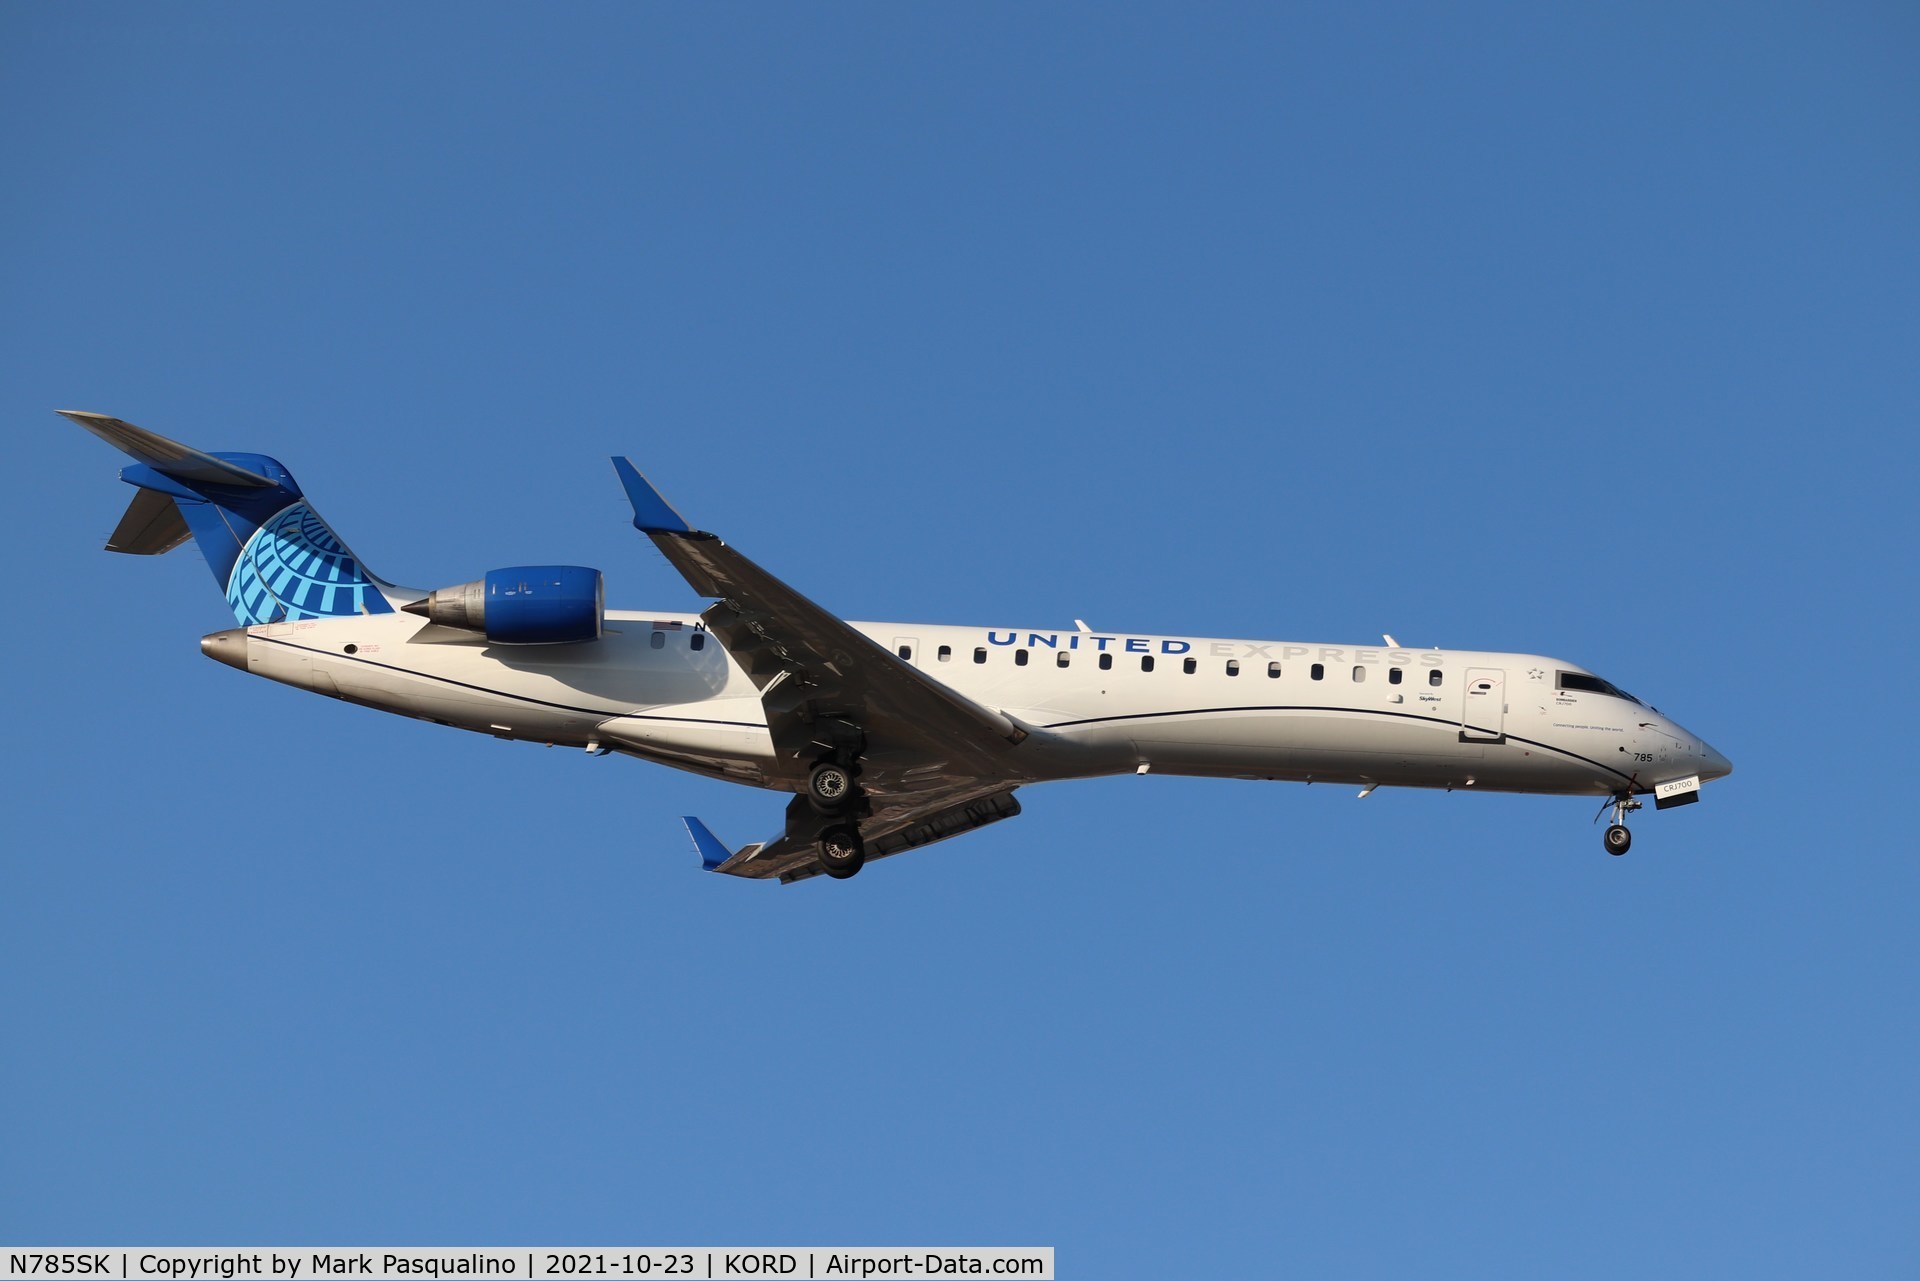 N785SK, 2009 Bombardier CRJ-700 (CL-600-2C10) Regional Jet C/N 10285, CL-600-2C10